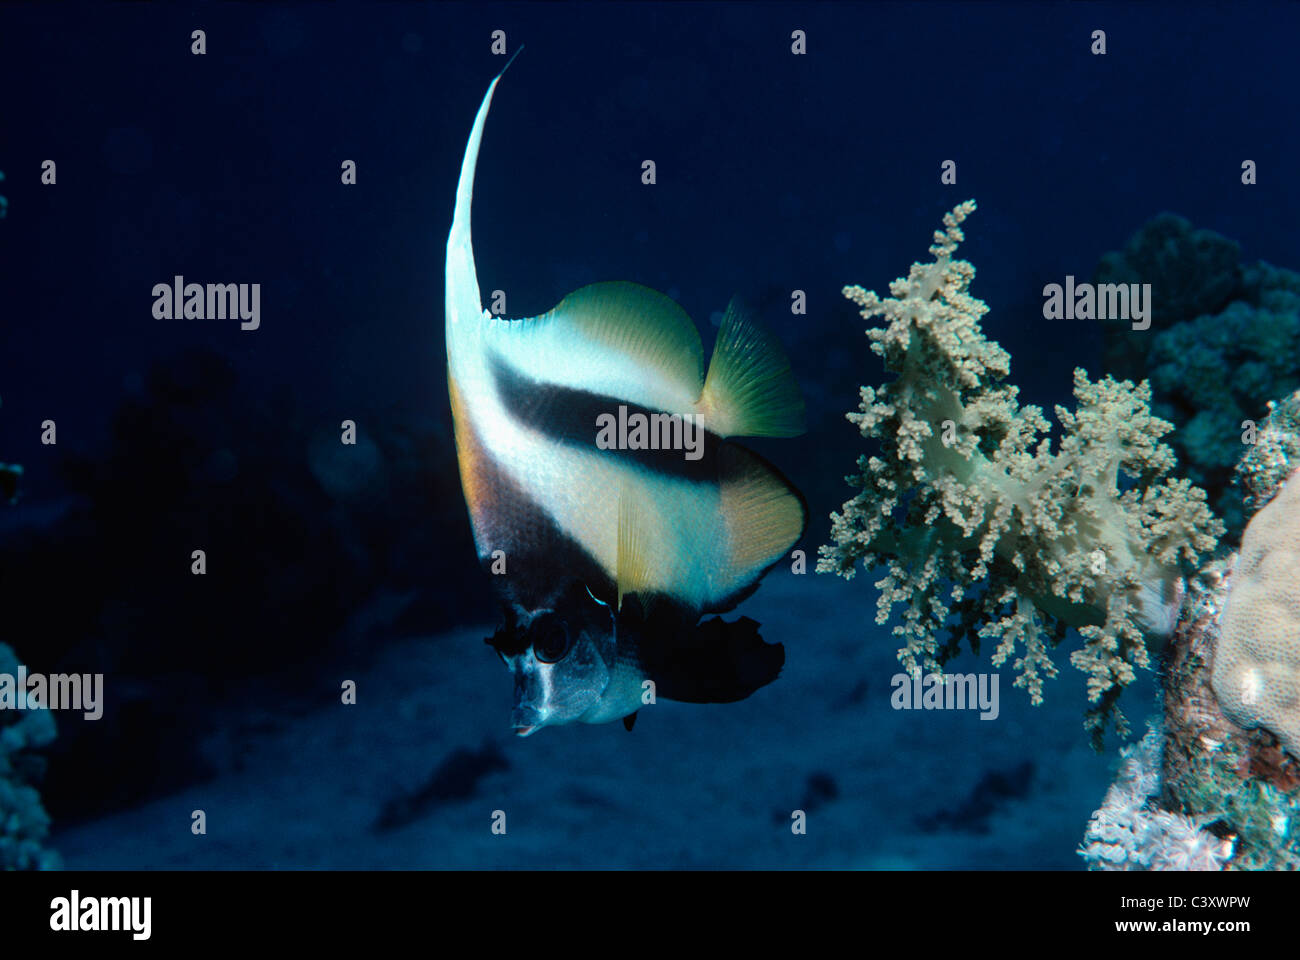 Paire de Red Sea Bannerfish (Heniochus intermedius), également connu sous le nom des idoles mauresques. L'Egypte, Mer Rouge. Banque D'Images